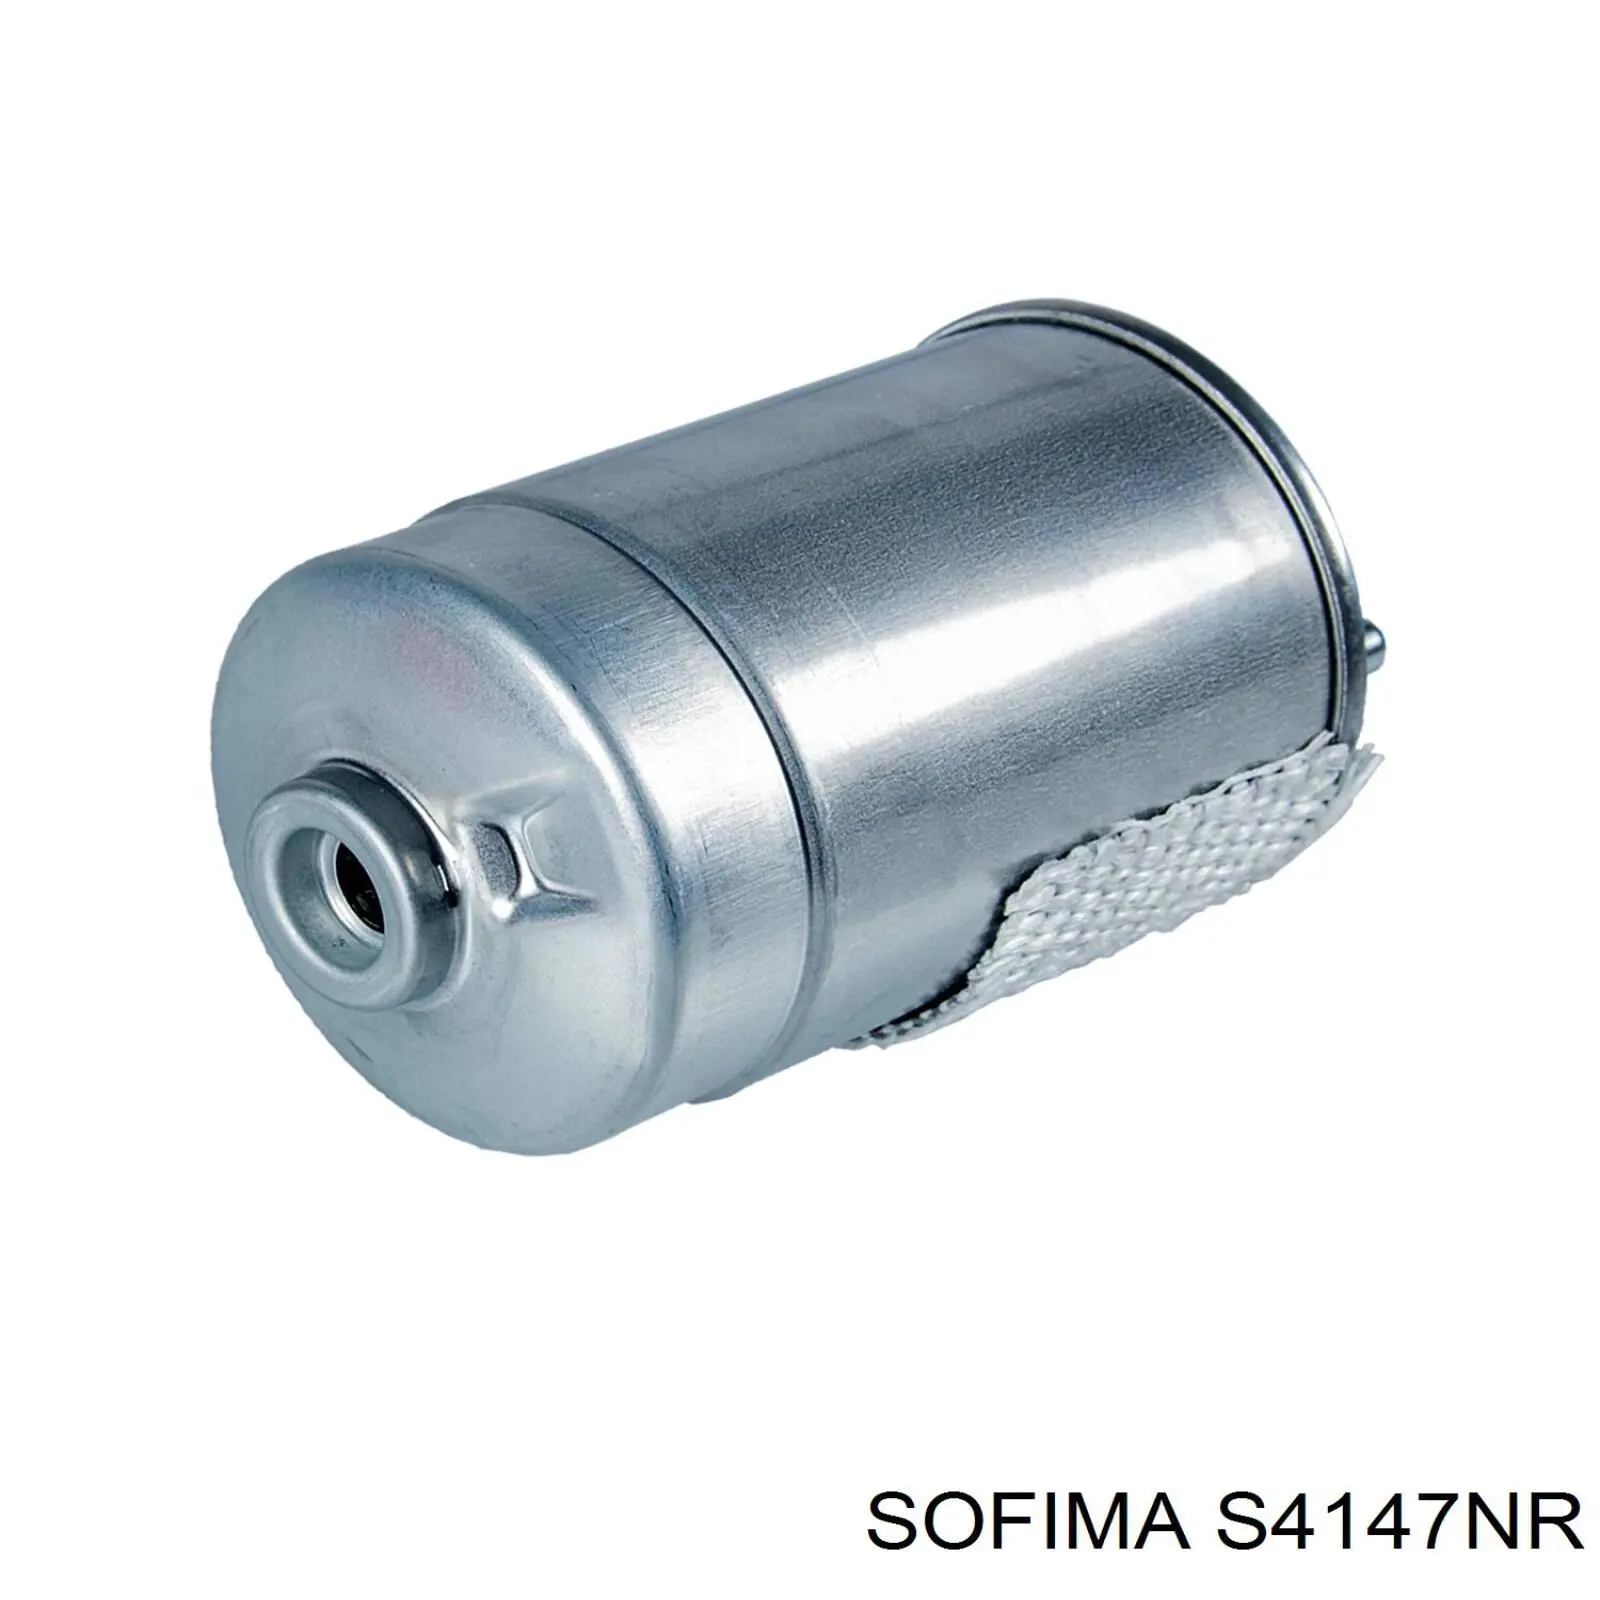 S 4147 NR Sofima filtro de combustible